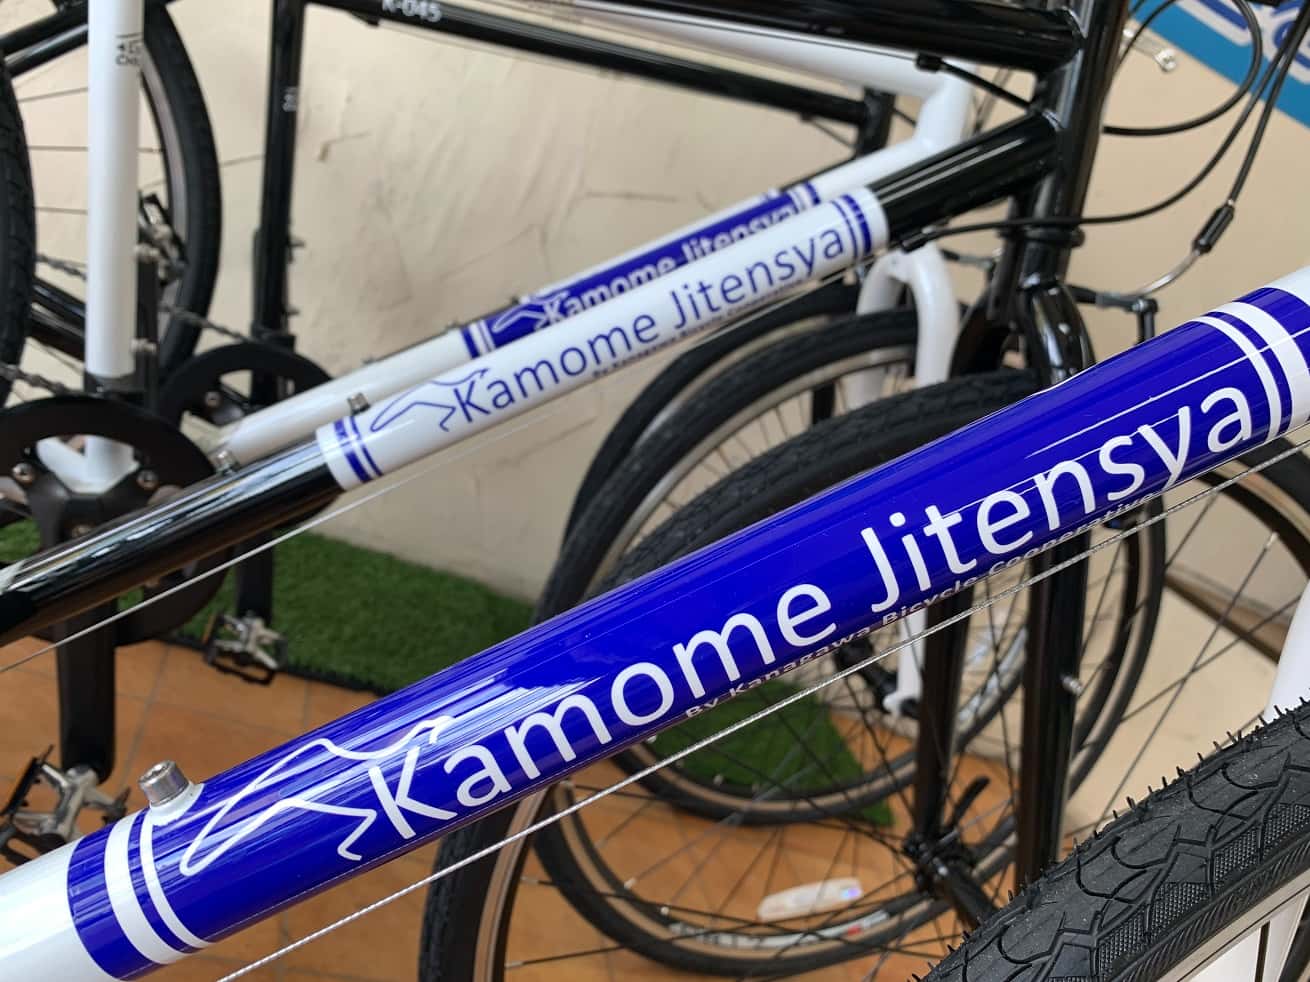 かもめ自転車の「Kamone Jitensya」ロゴ